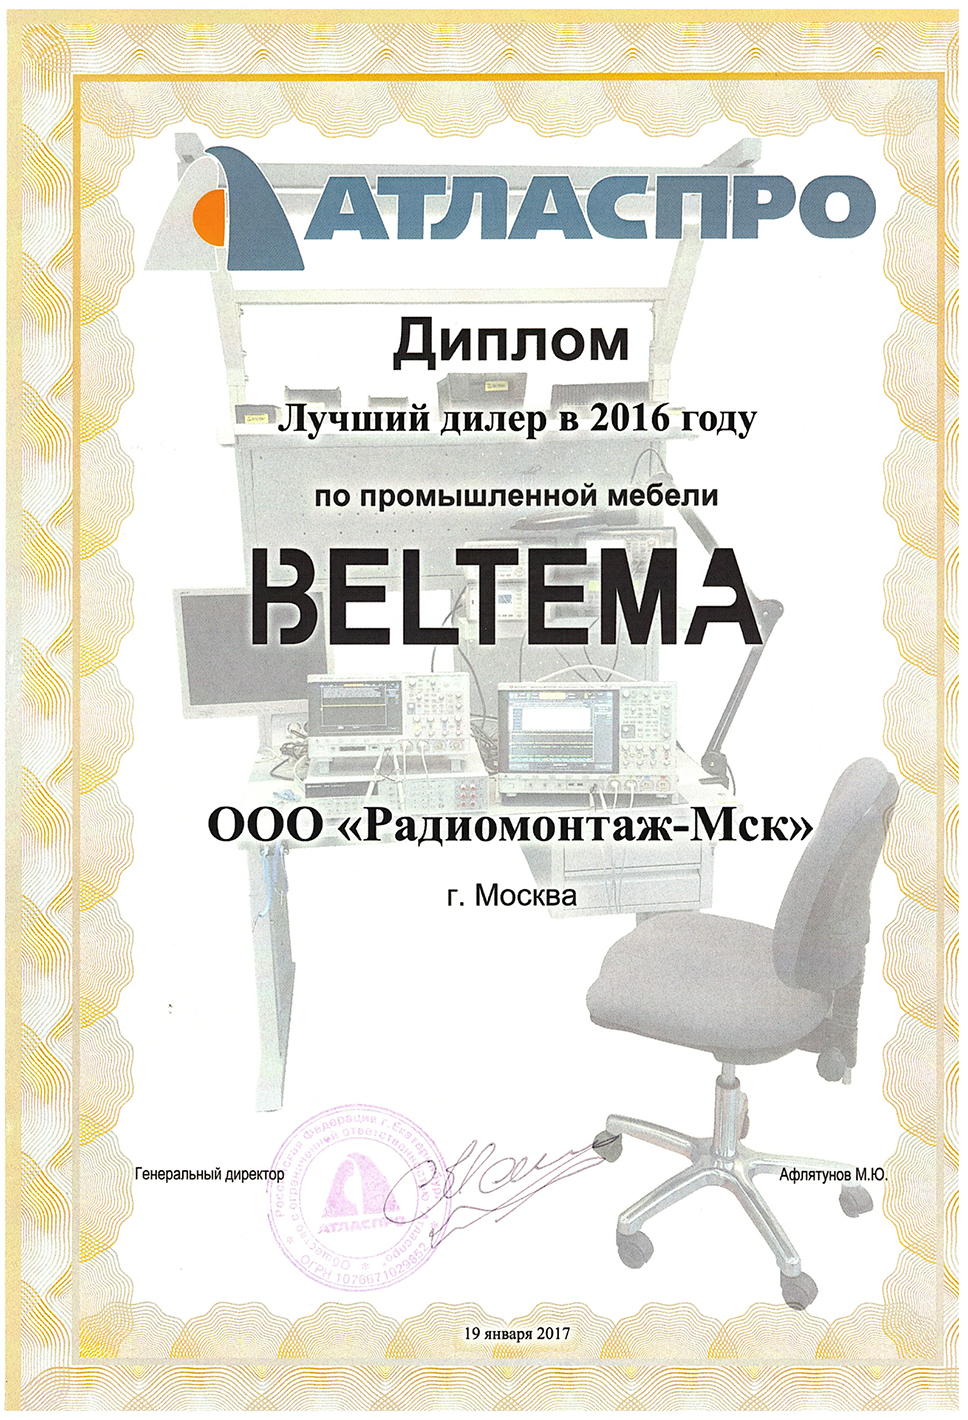 Лучший дилер промышленной мебели BELTEMA в 2016 году.